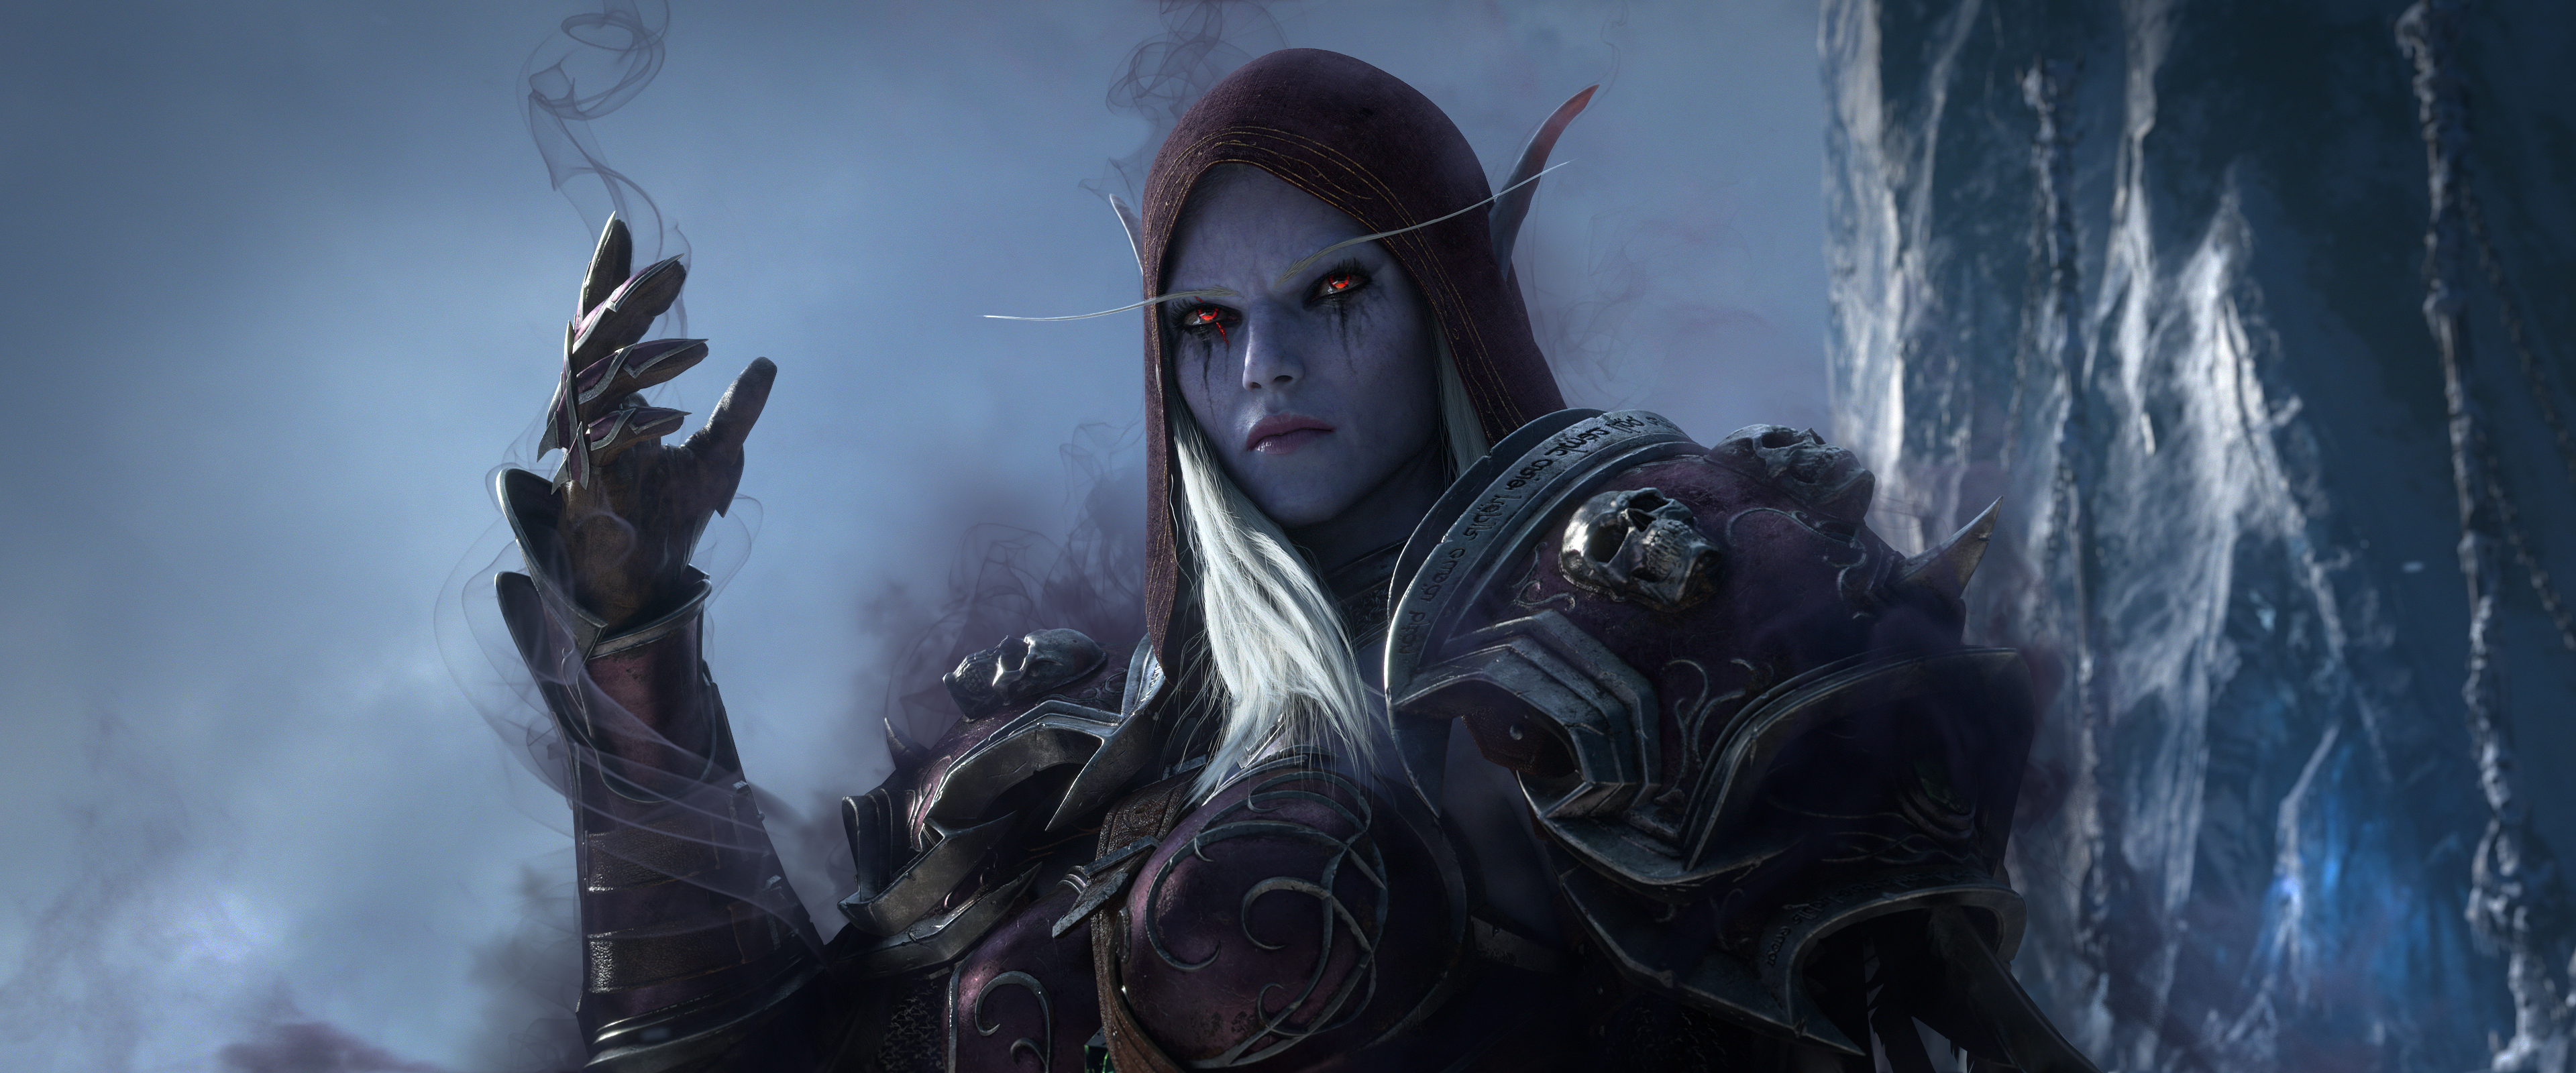 Скачать обои Мир Warcraft: Shadowlands на телефон бесплатно